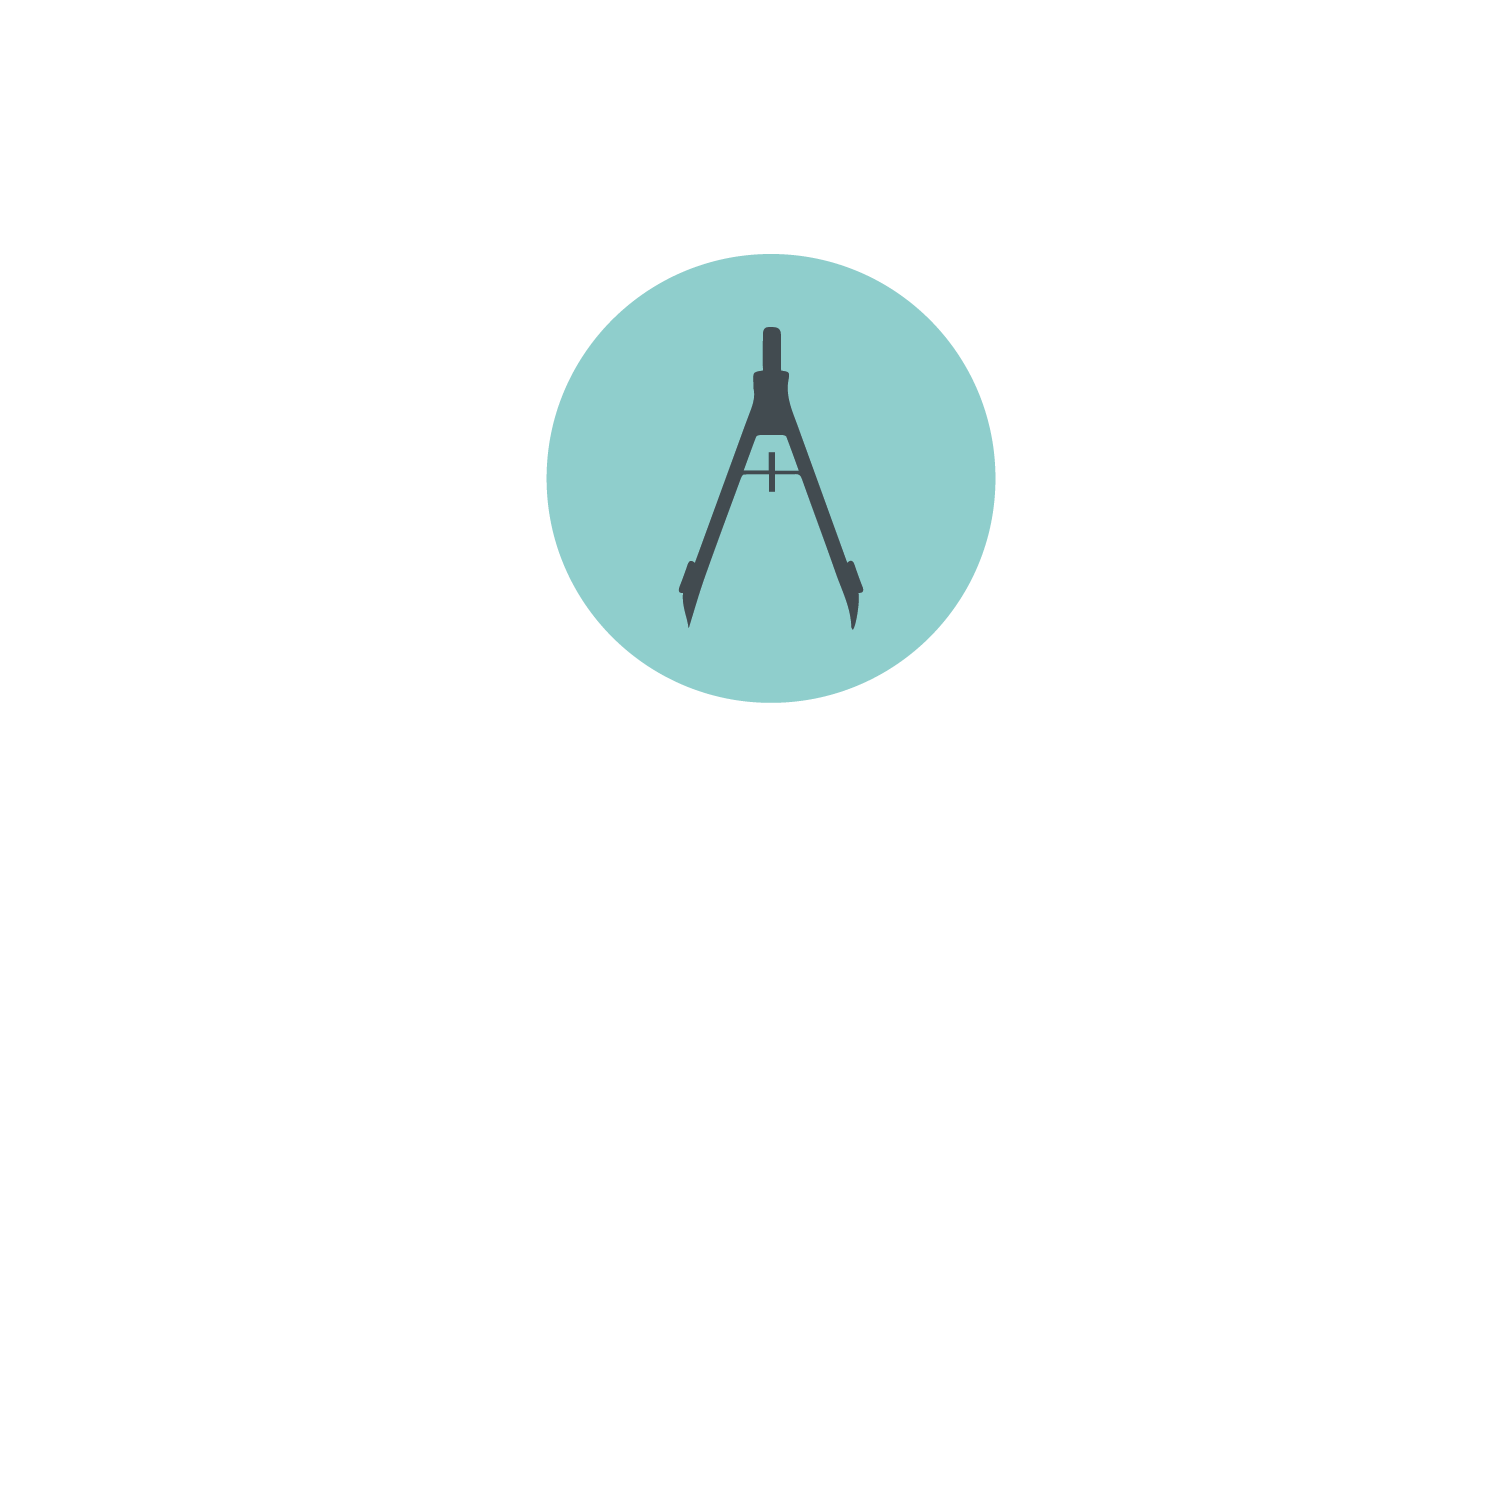 Jake Underwood